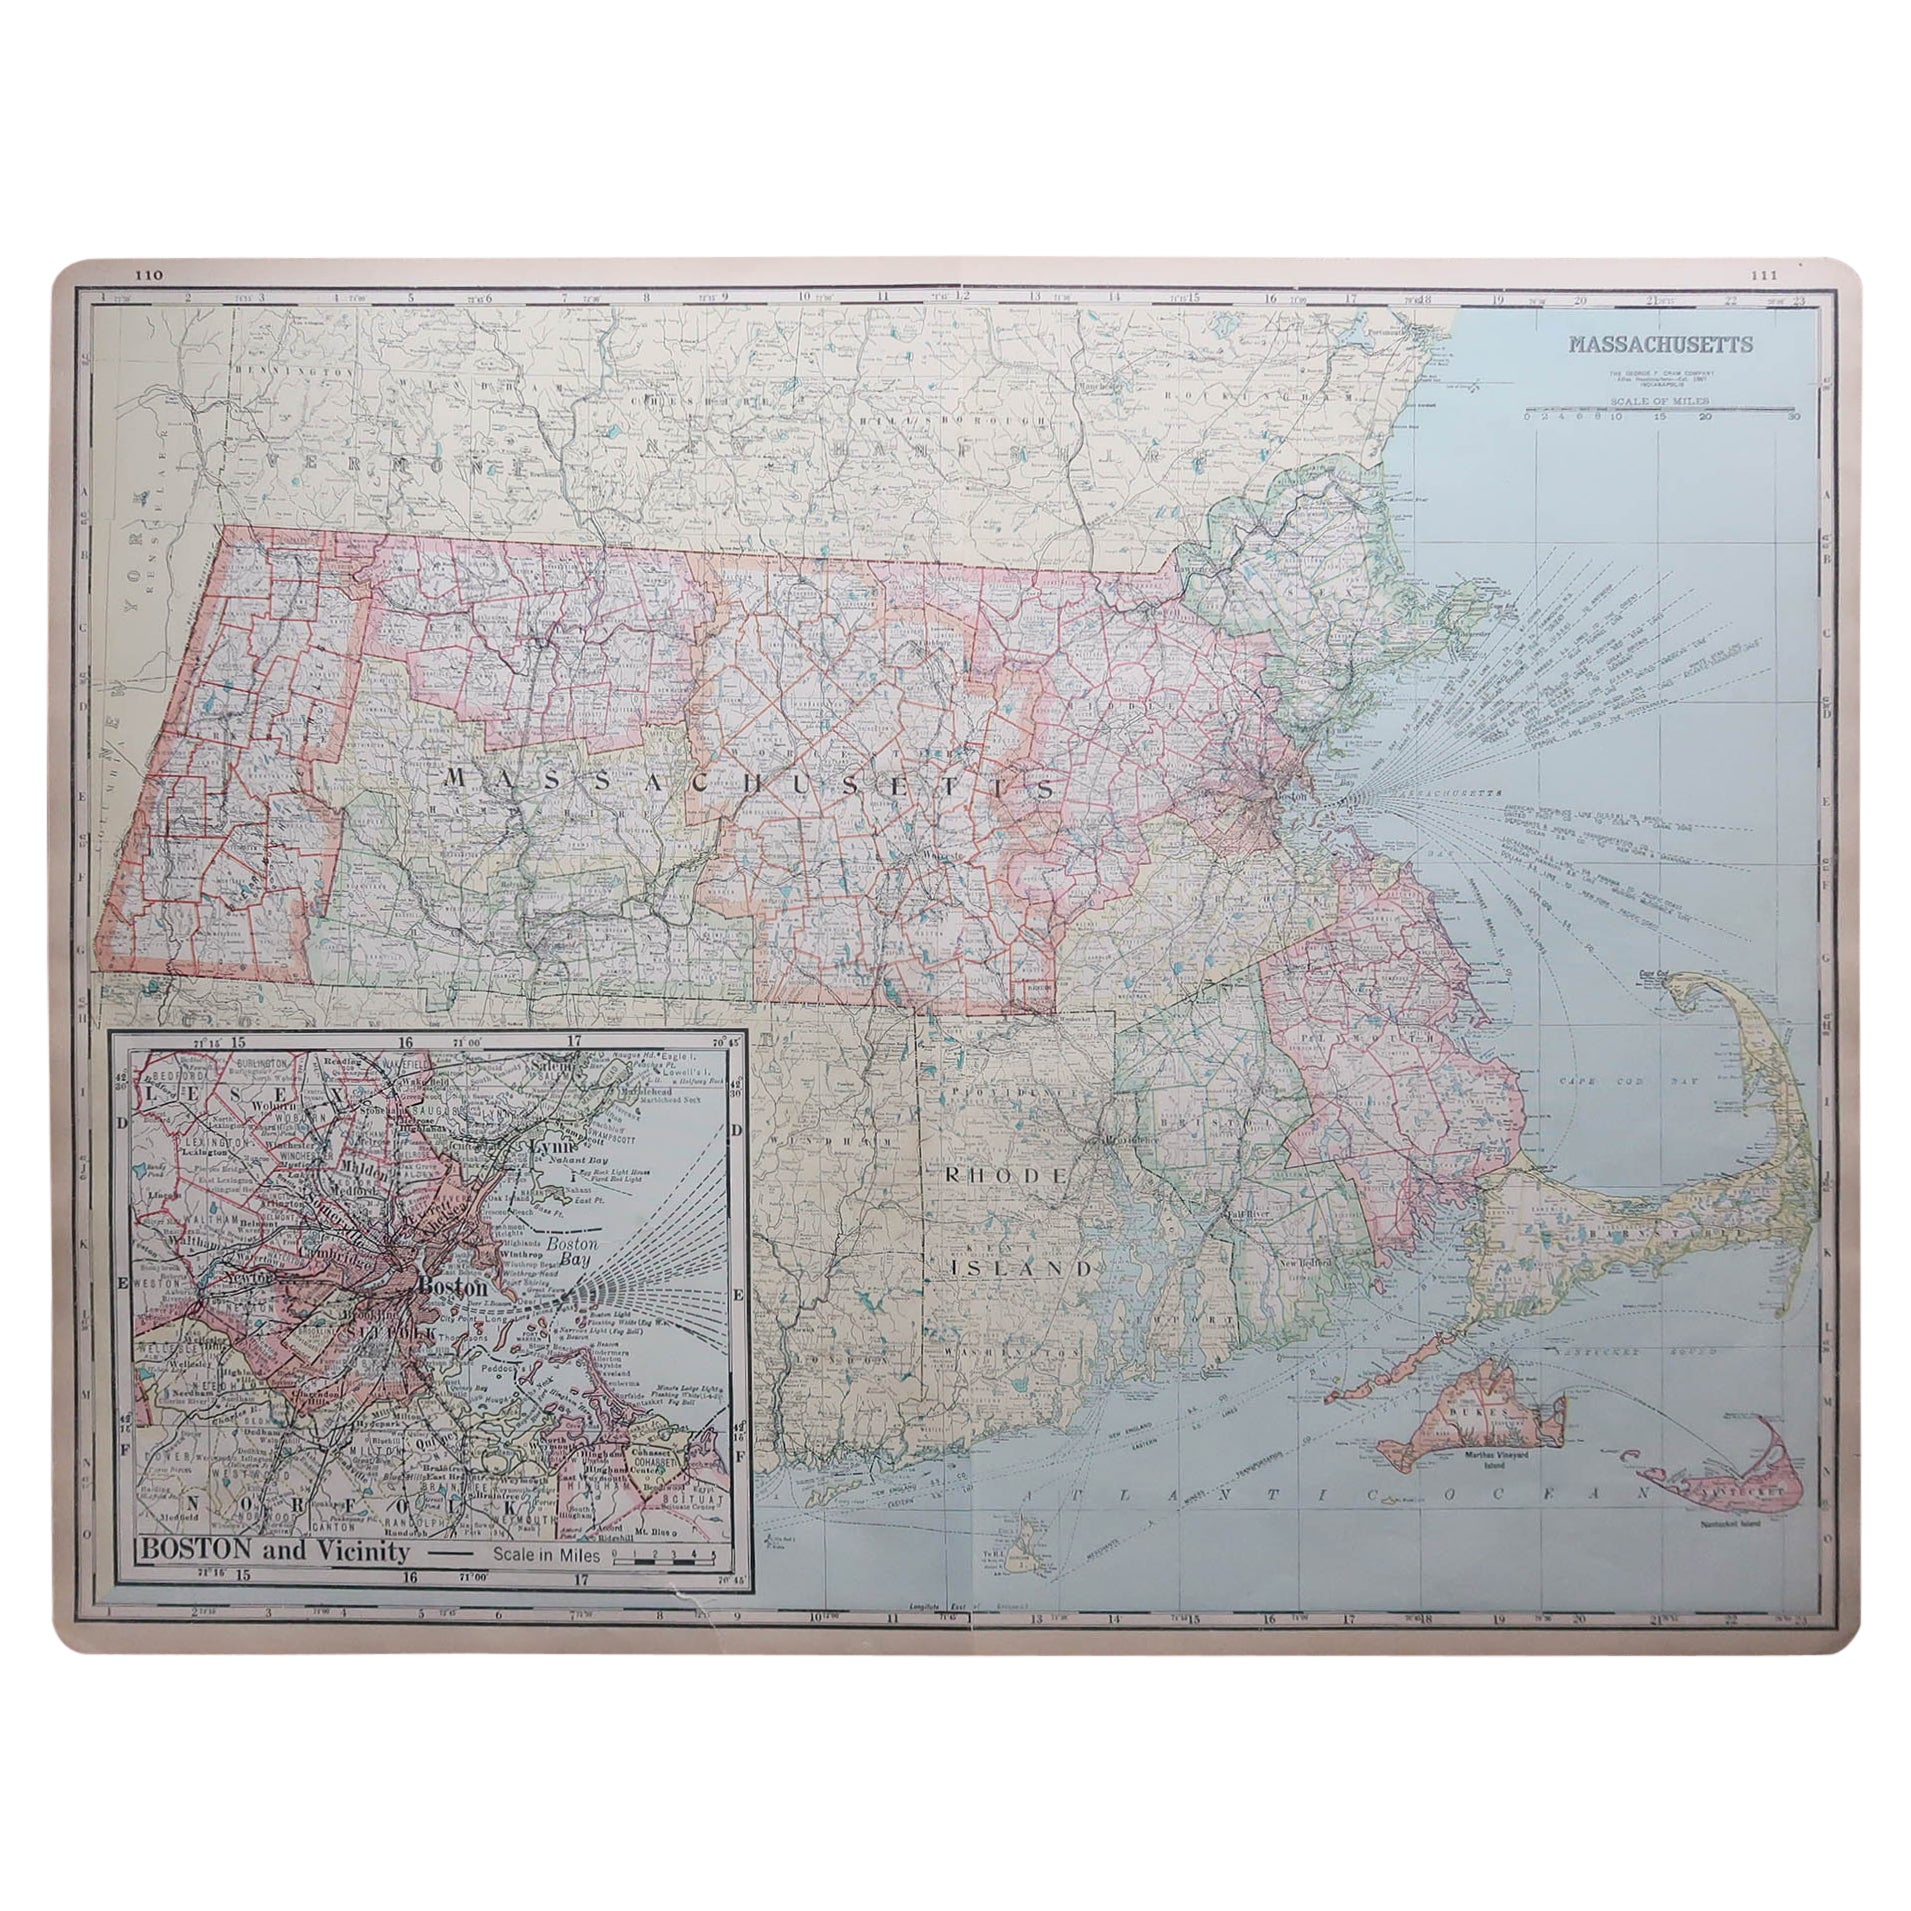 Grande carte ancienne originale du Massachusetts, États-Unis, datant d'environ 1900